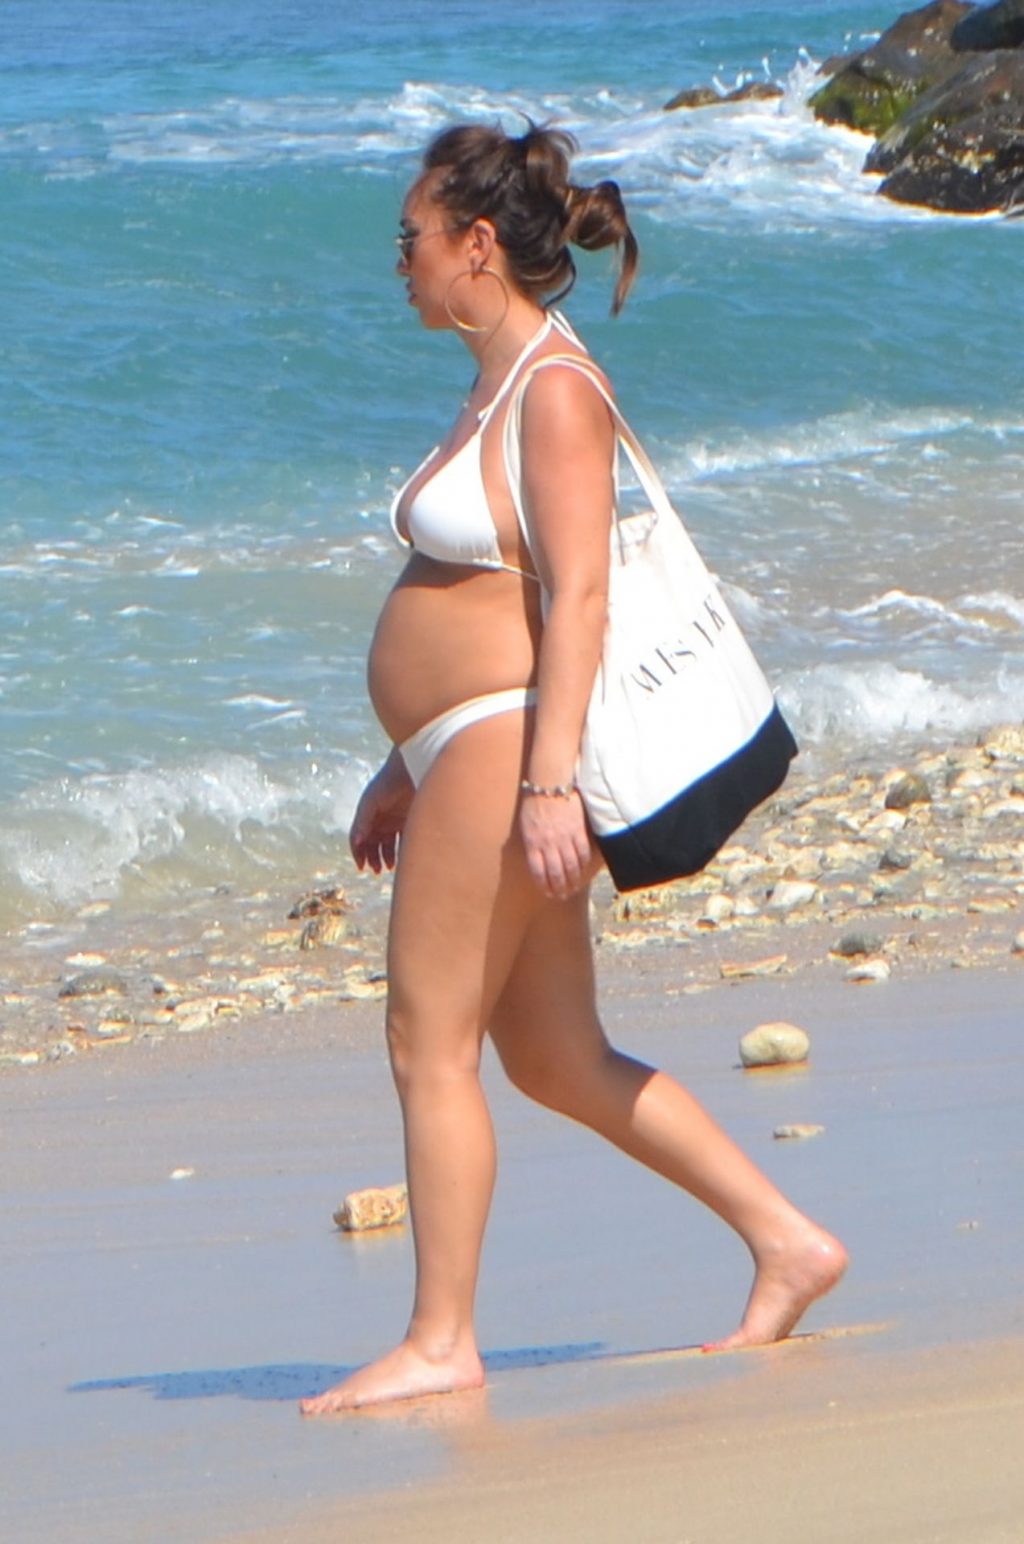 Pregnant Lauryn Goodman is Seen In a Bikini On The Beach (8 Photos)